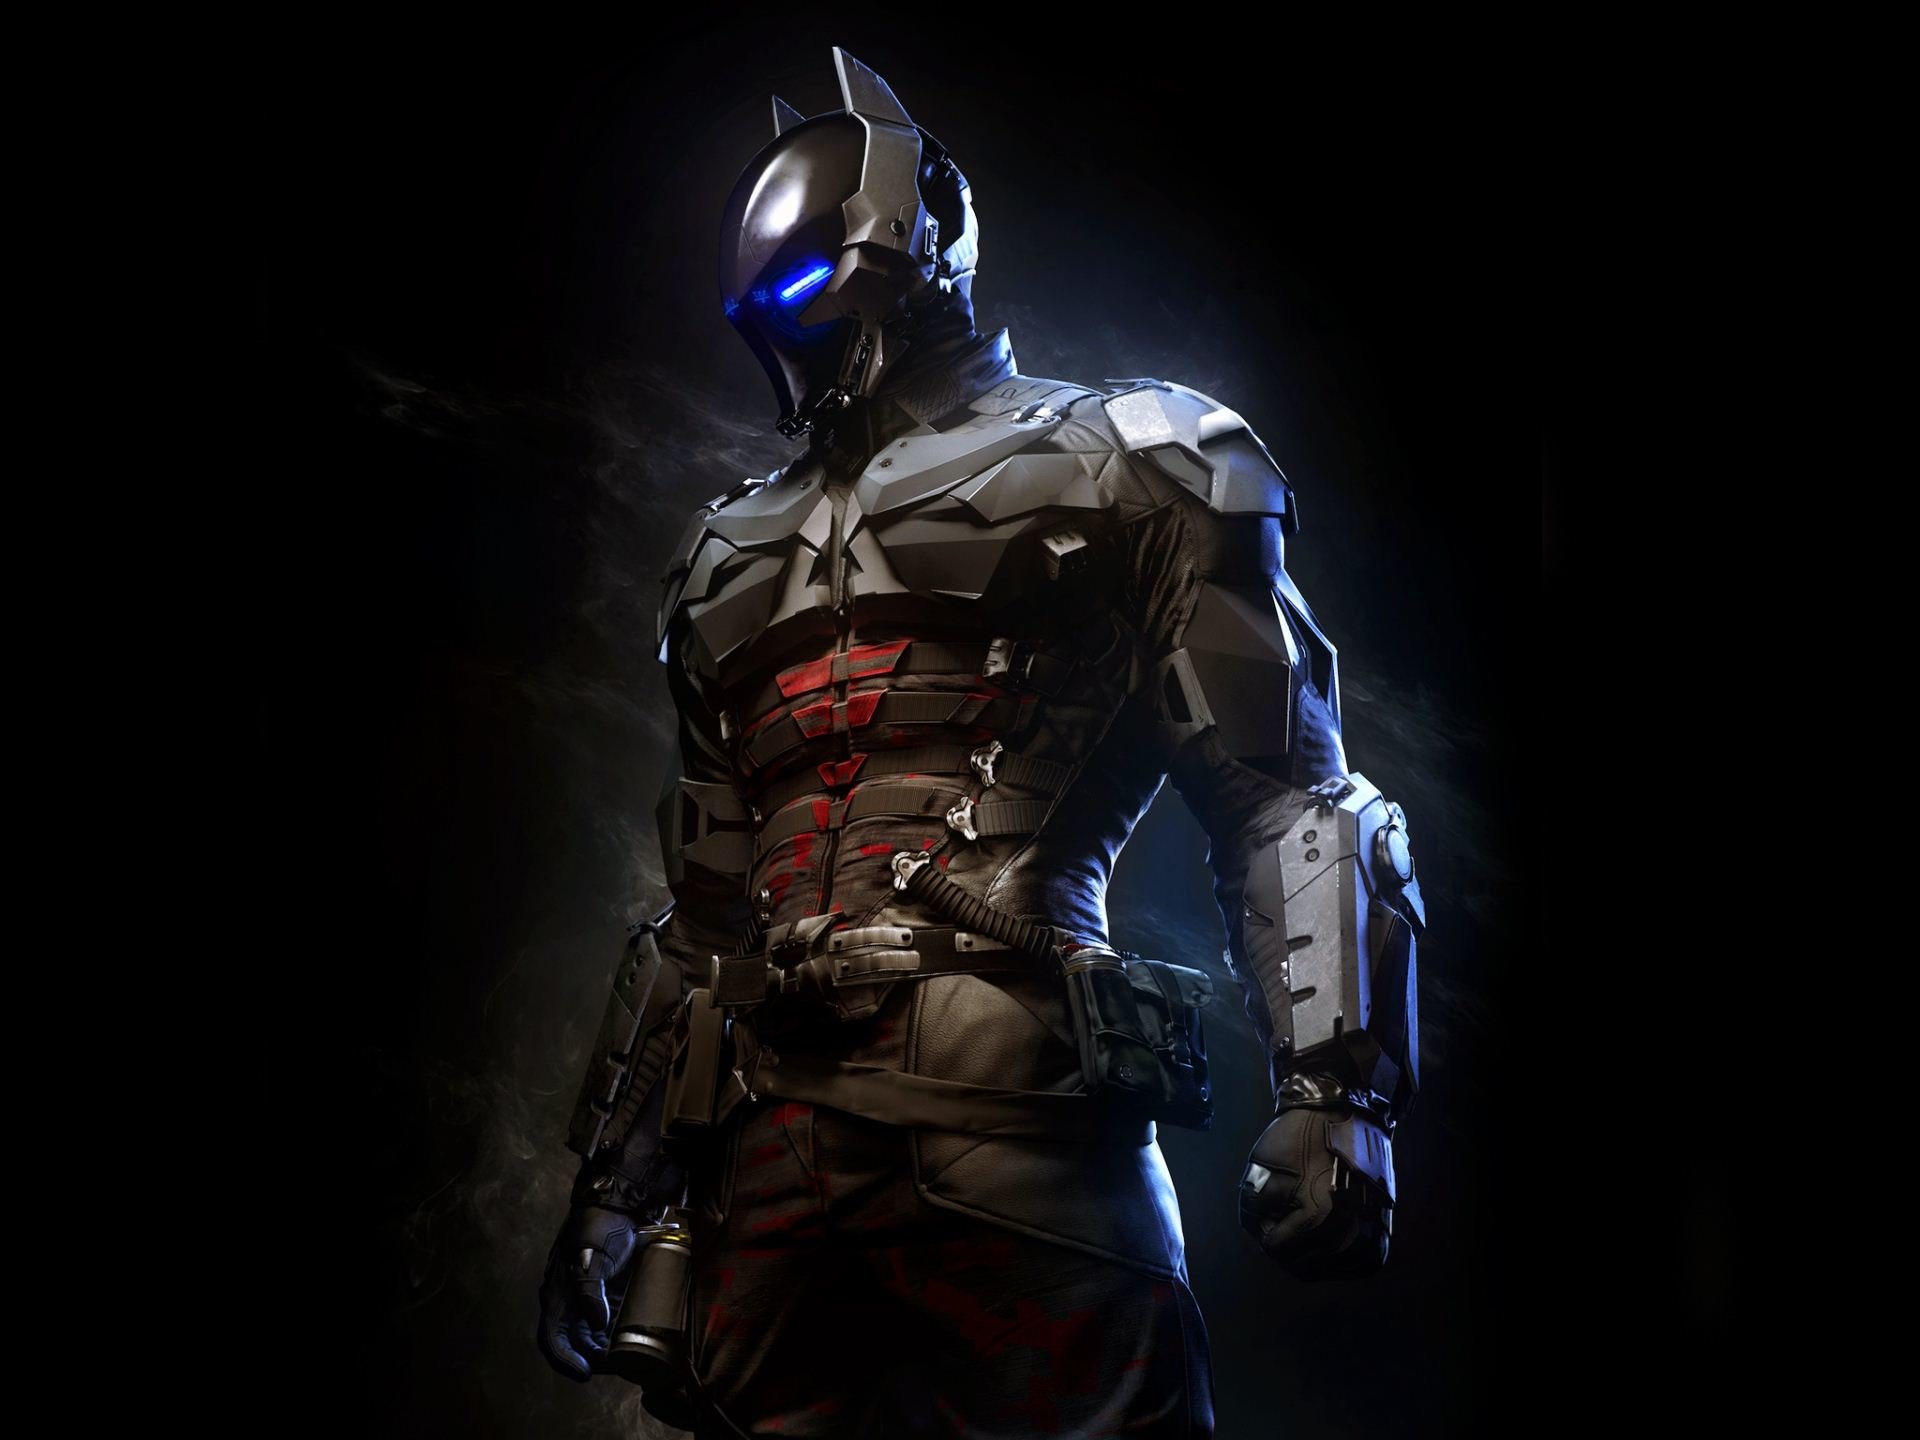 High resolution Batman: Arkham Knight hd 1920x1440 background ID:174111 for PC